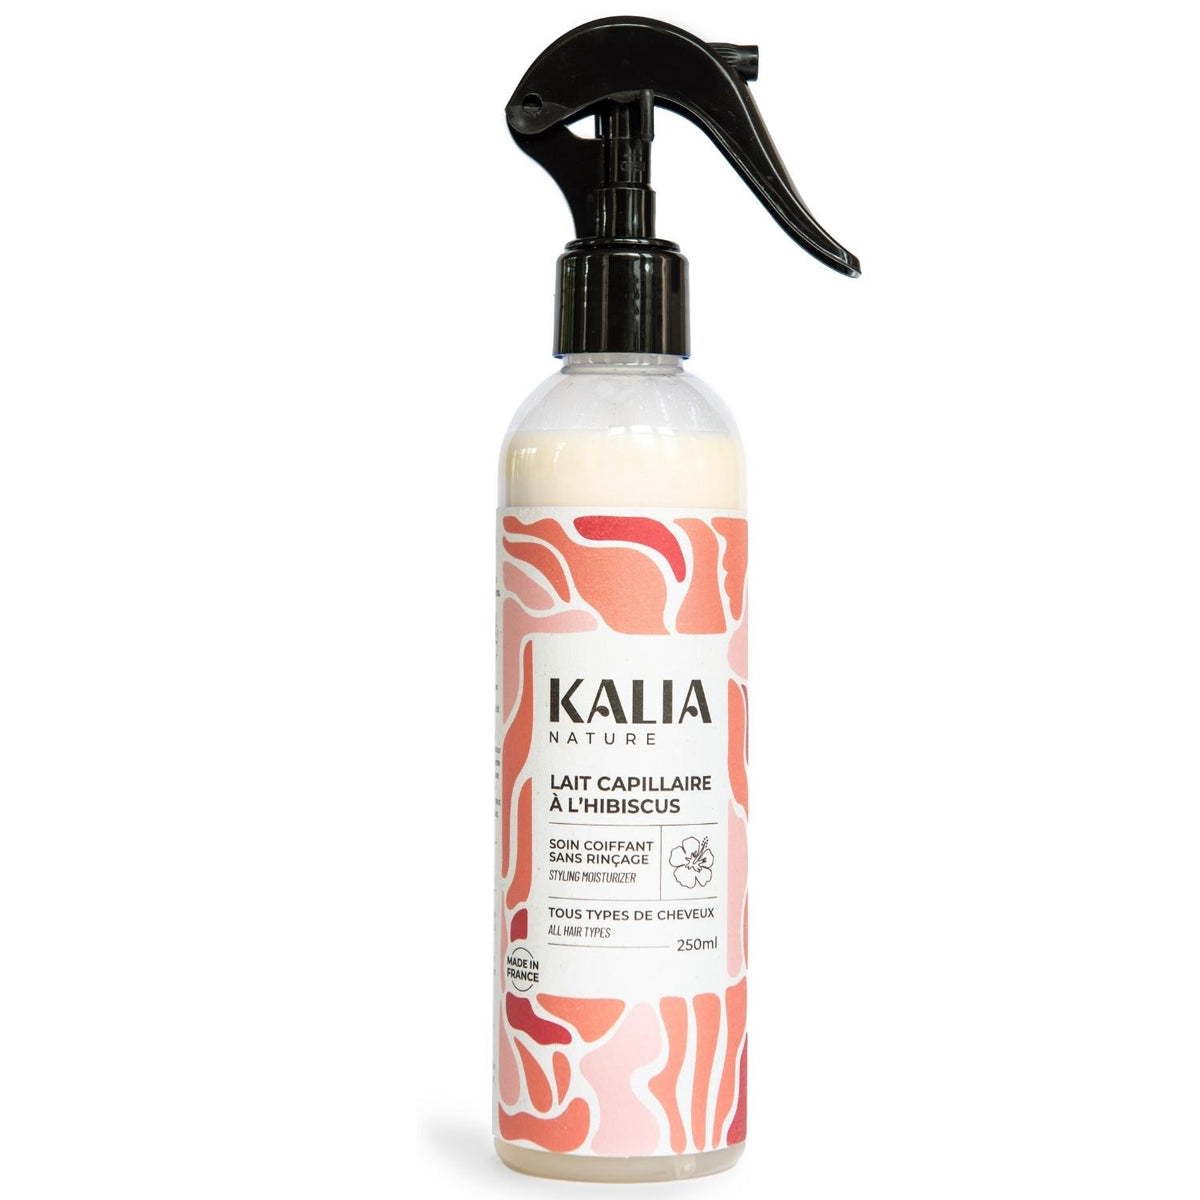 Avec le Lait capillaire à l’Hibiscus Kalia Nature, vous apportez à vos cheveux une dose quotidienne d’hydratation et de nutrition favorisant brillance et définition.